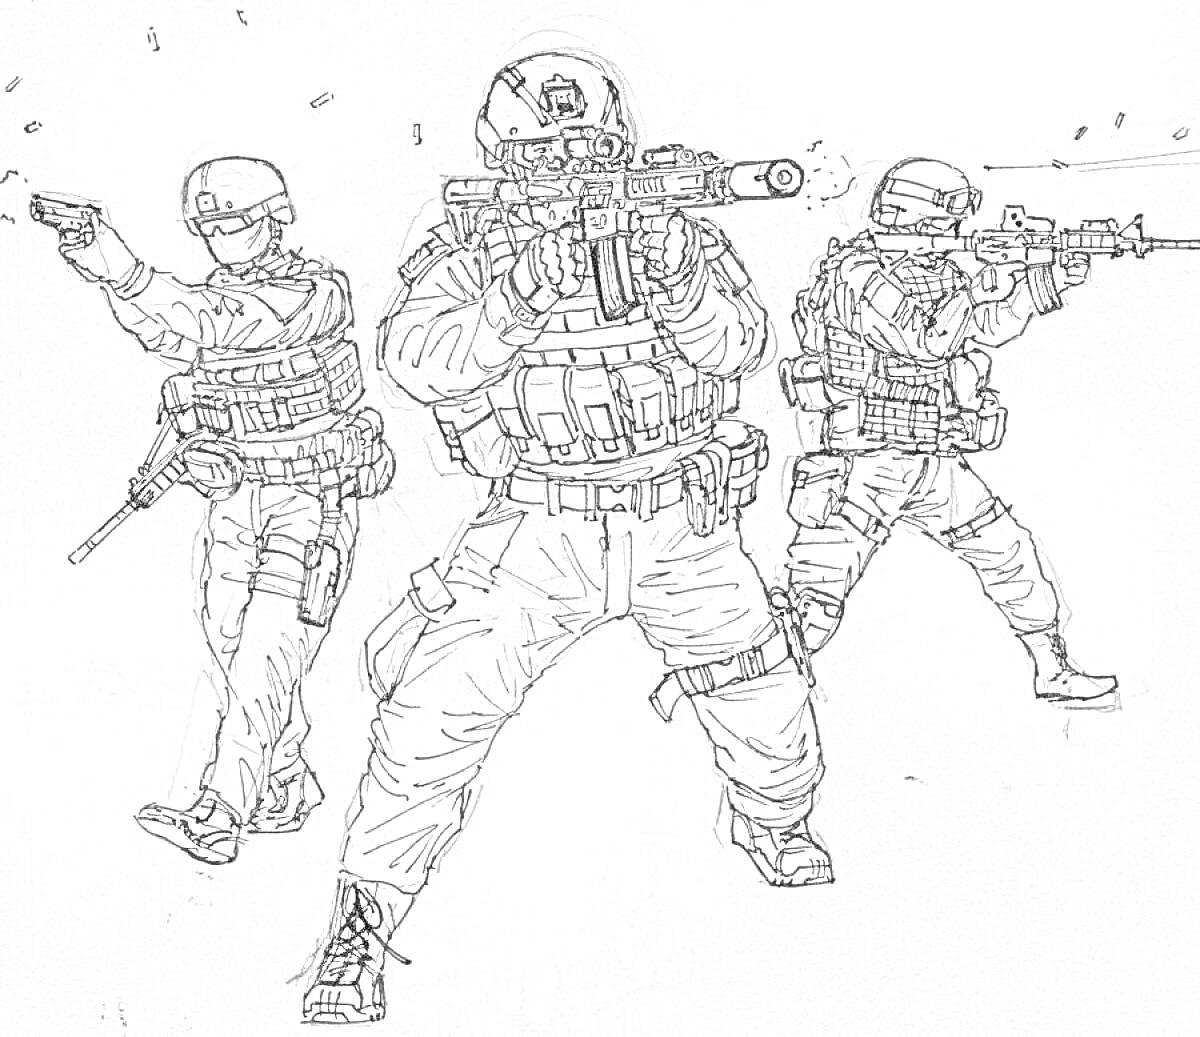 Три бойца спецназа в полном боевом снаряжении, с касками и бронежилетами, стреляющие из автоматов и пистолета